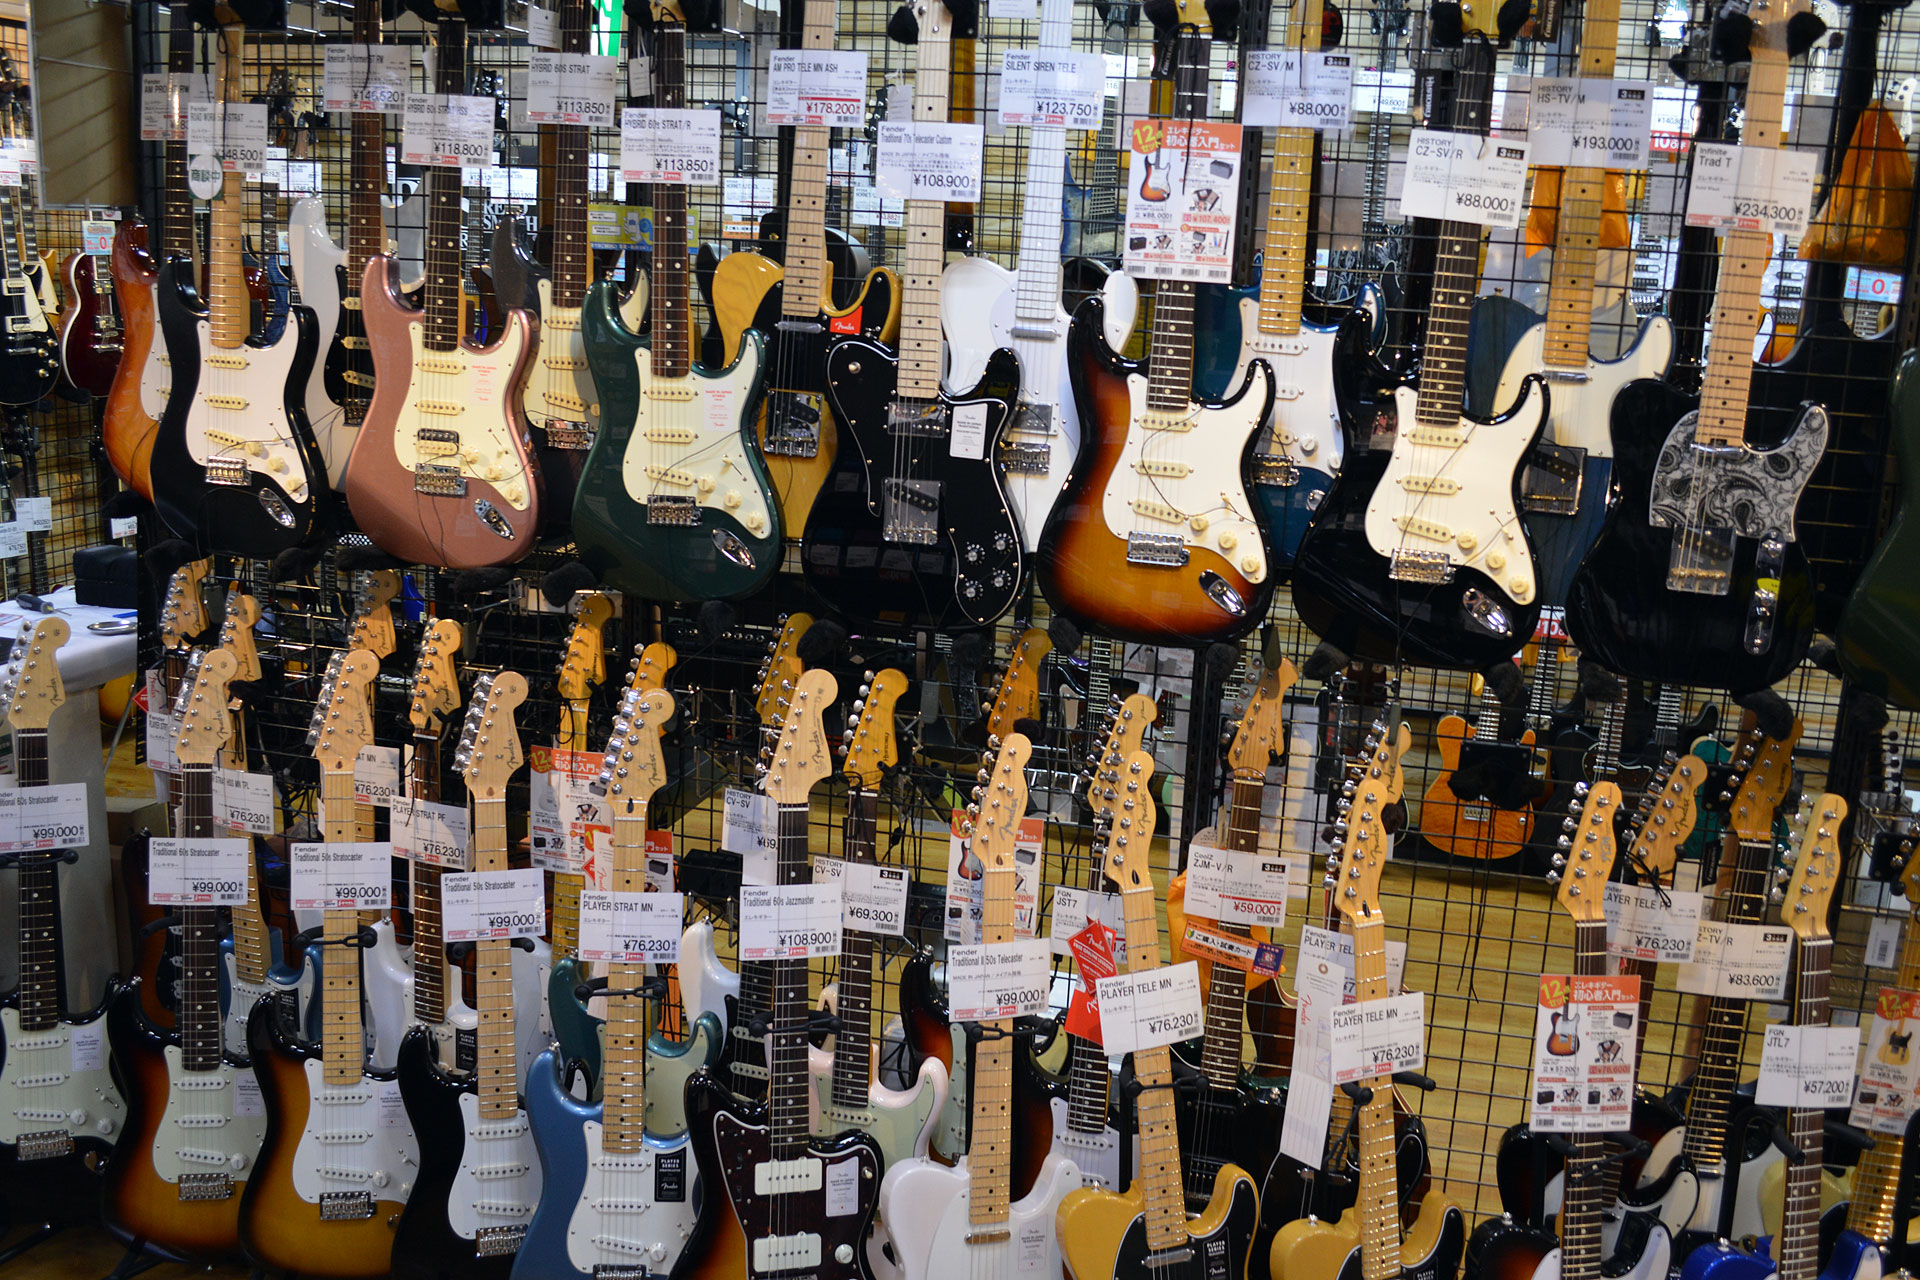 【エレキギター】Fender Stratocaster（フェンダー・ストラトキャスター）大特集【デジマート 島村楽器 三宮オーパ店 掲載情報】